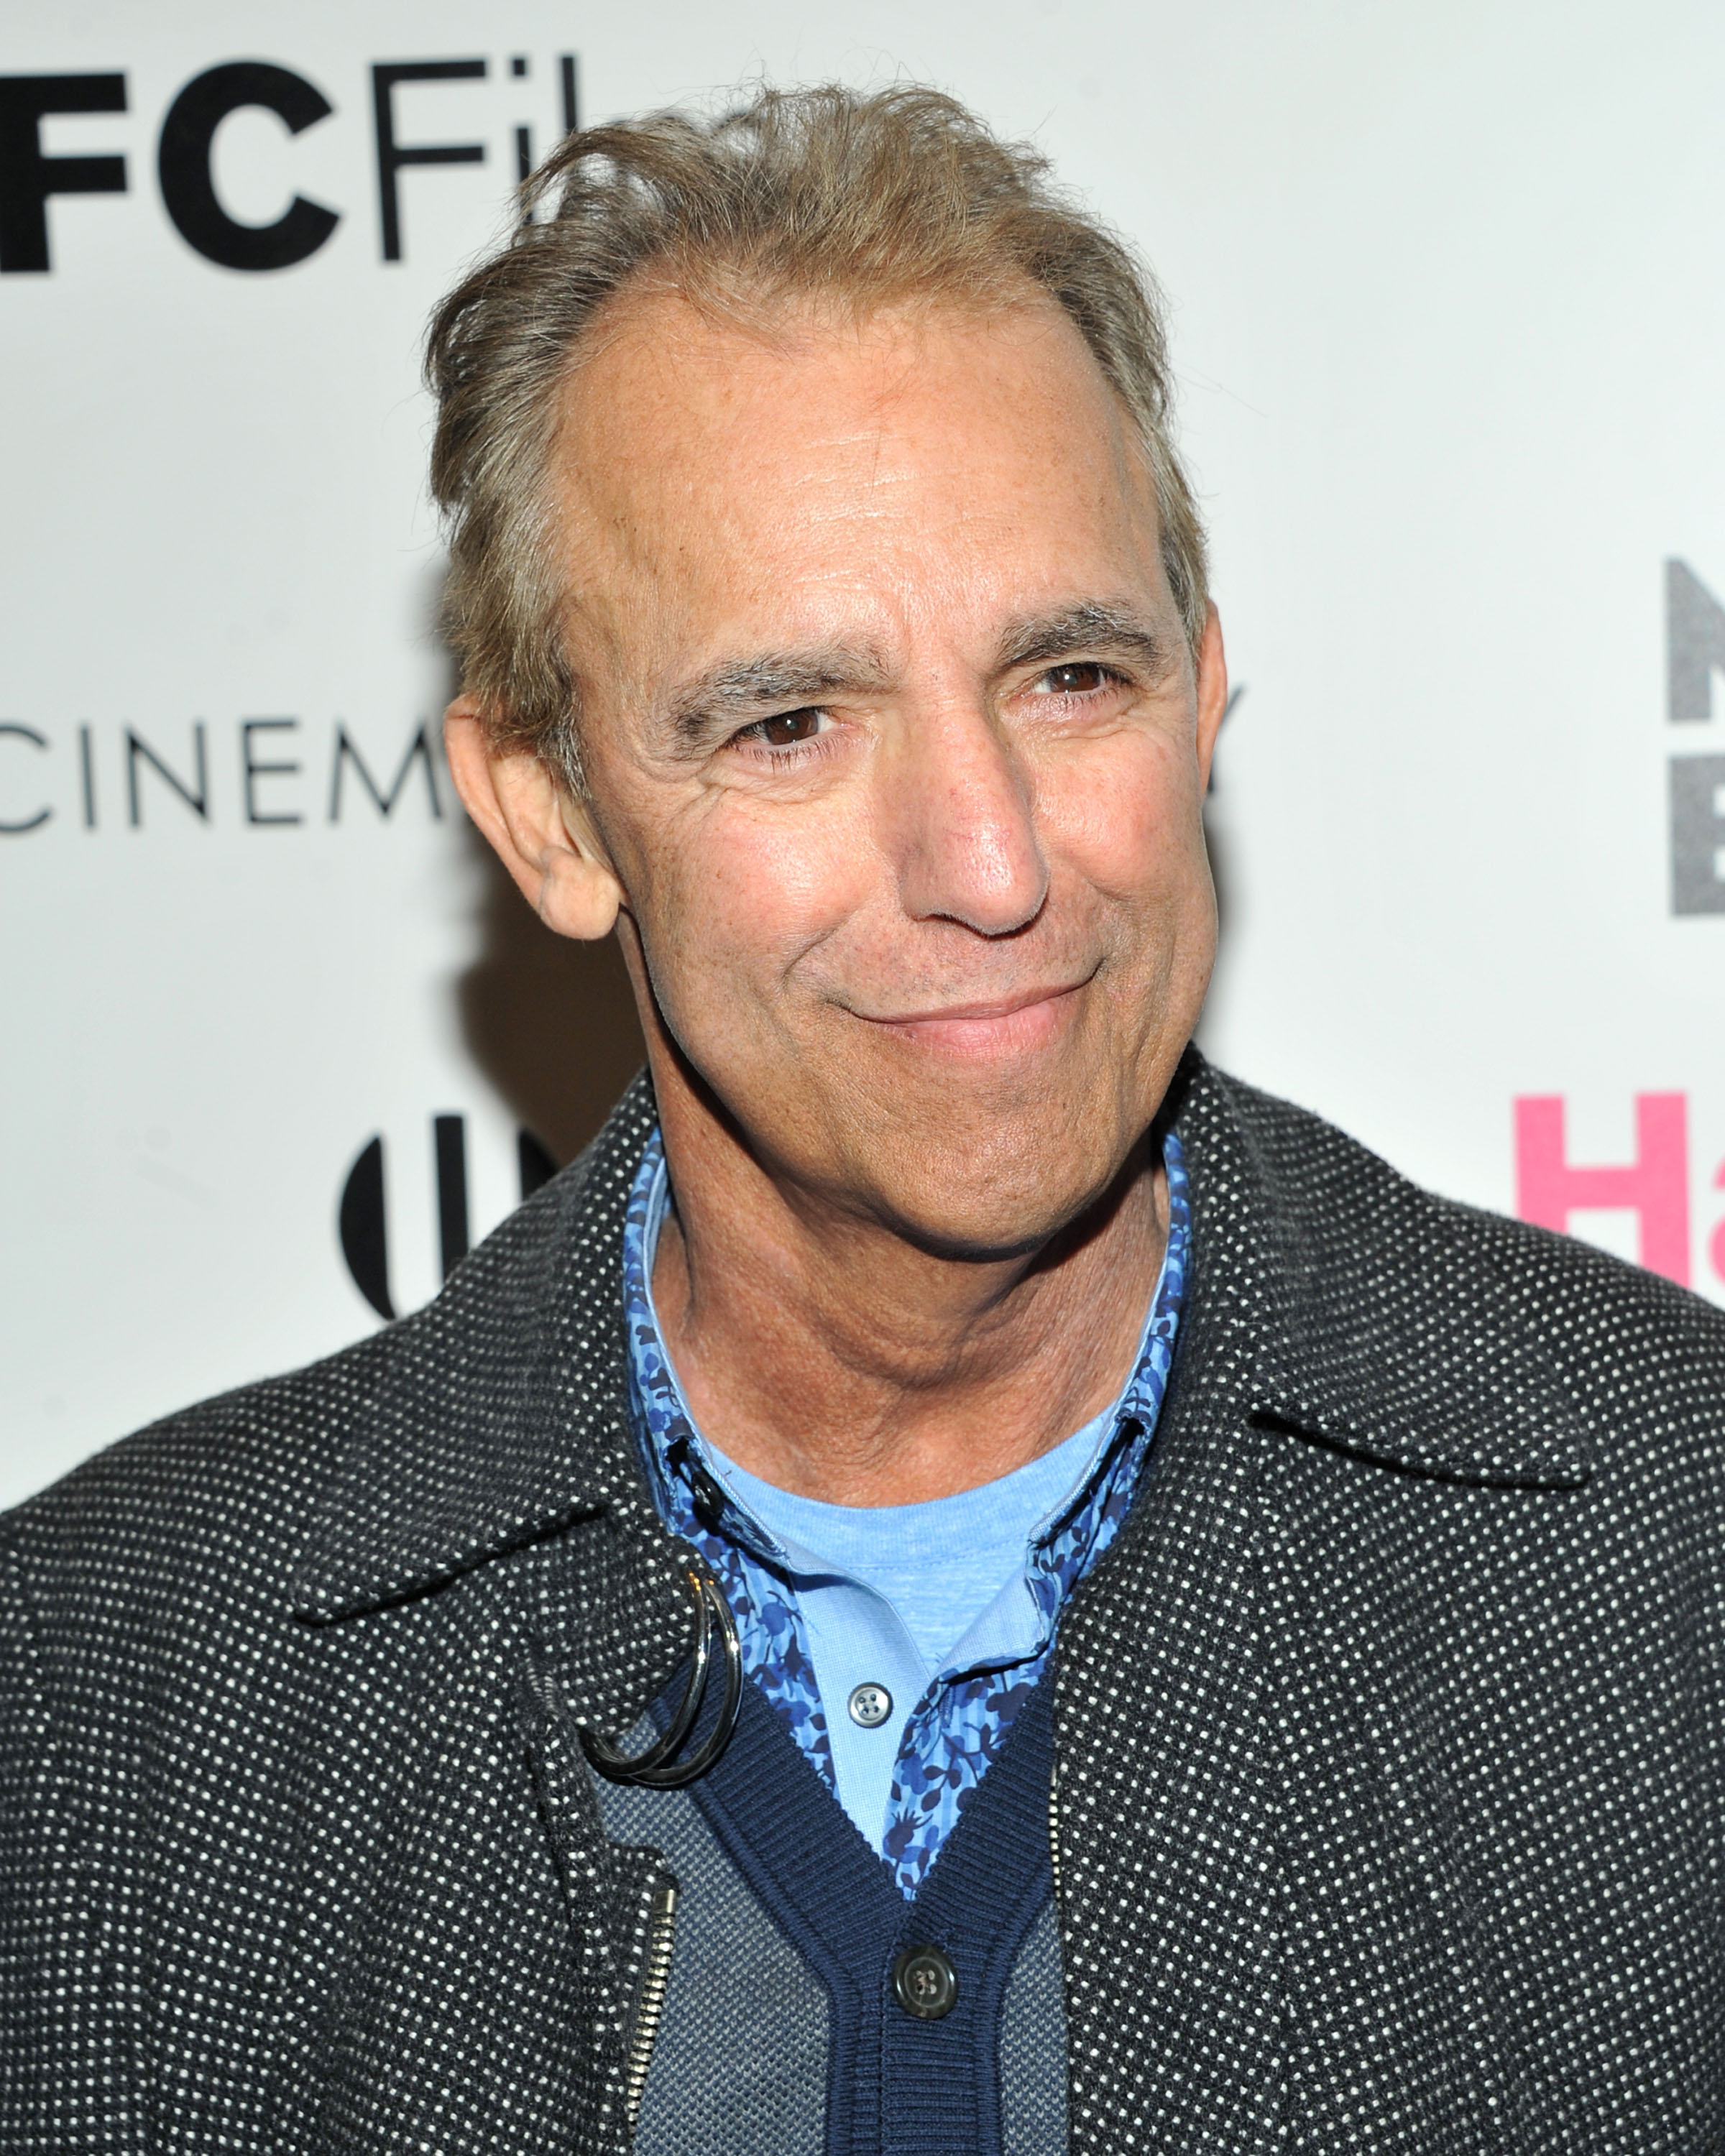 Jay Thomas asiste a la proyección de "Hateship Loveship" de IFC Films, el 8 de abril de 2014 en Nueva York. | Foto: Getty Images